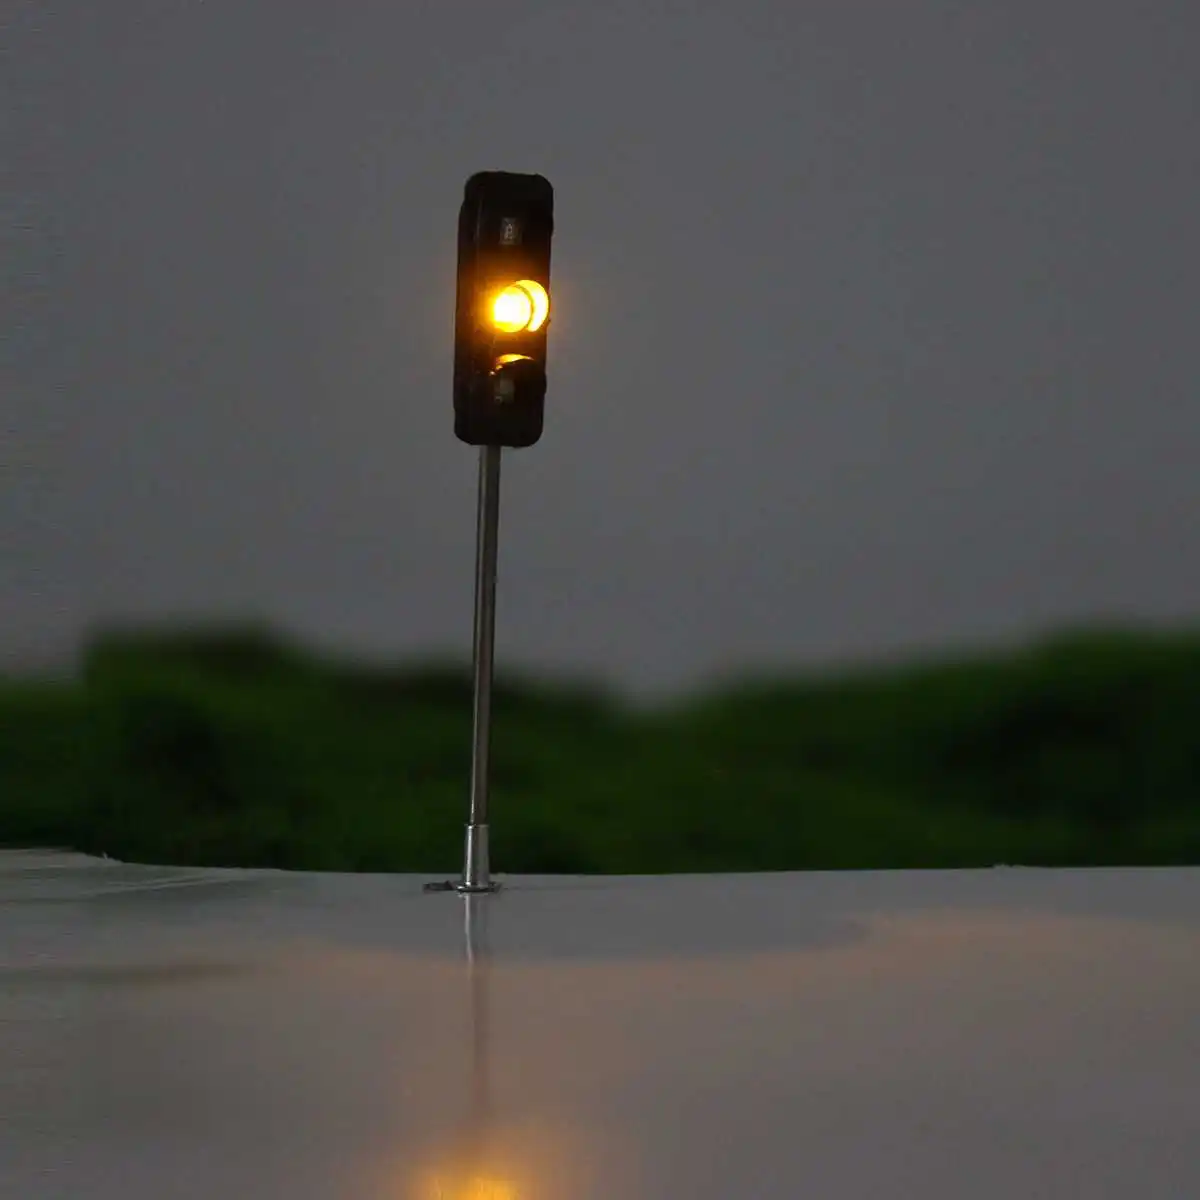 3 шт. конструкция Хо/ОО модель 3-светильник дорожный светильник s сигнальный светодиодный контур модель 50 мм DIY для архитектурной уличной железнодорожной дороги